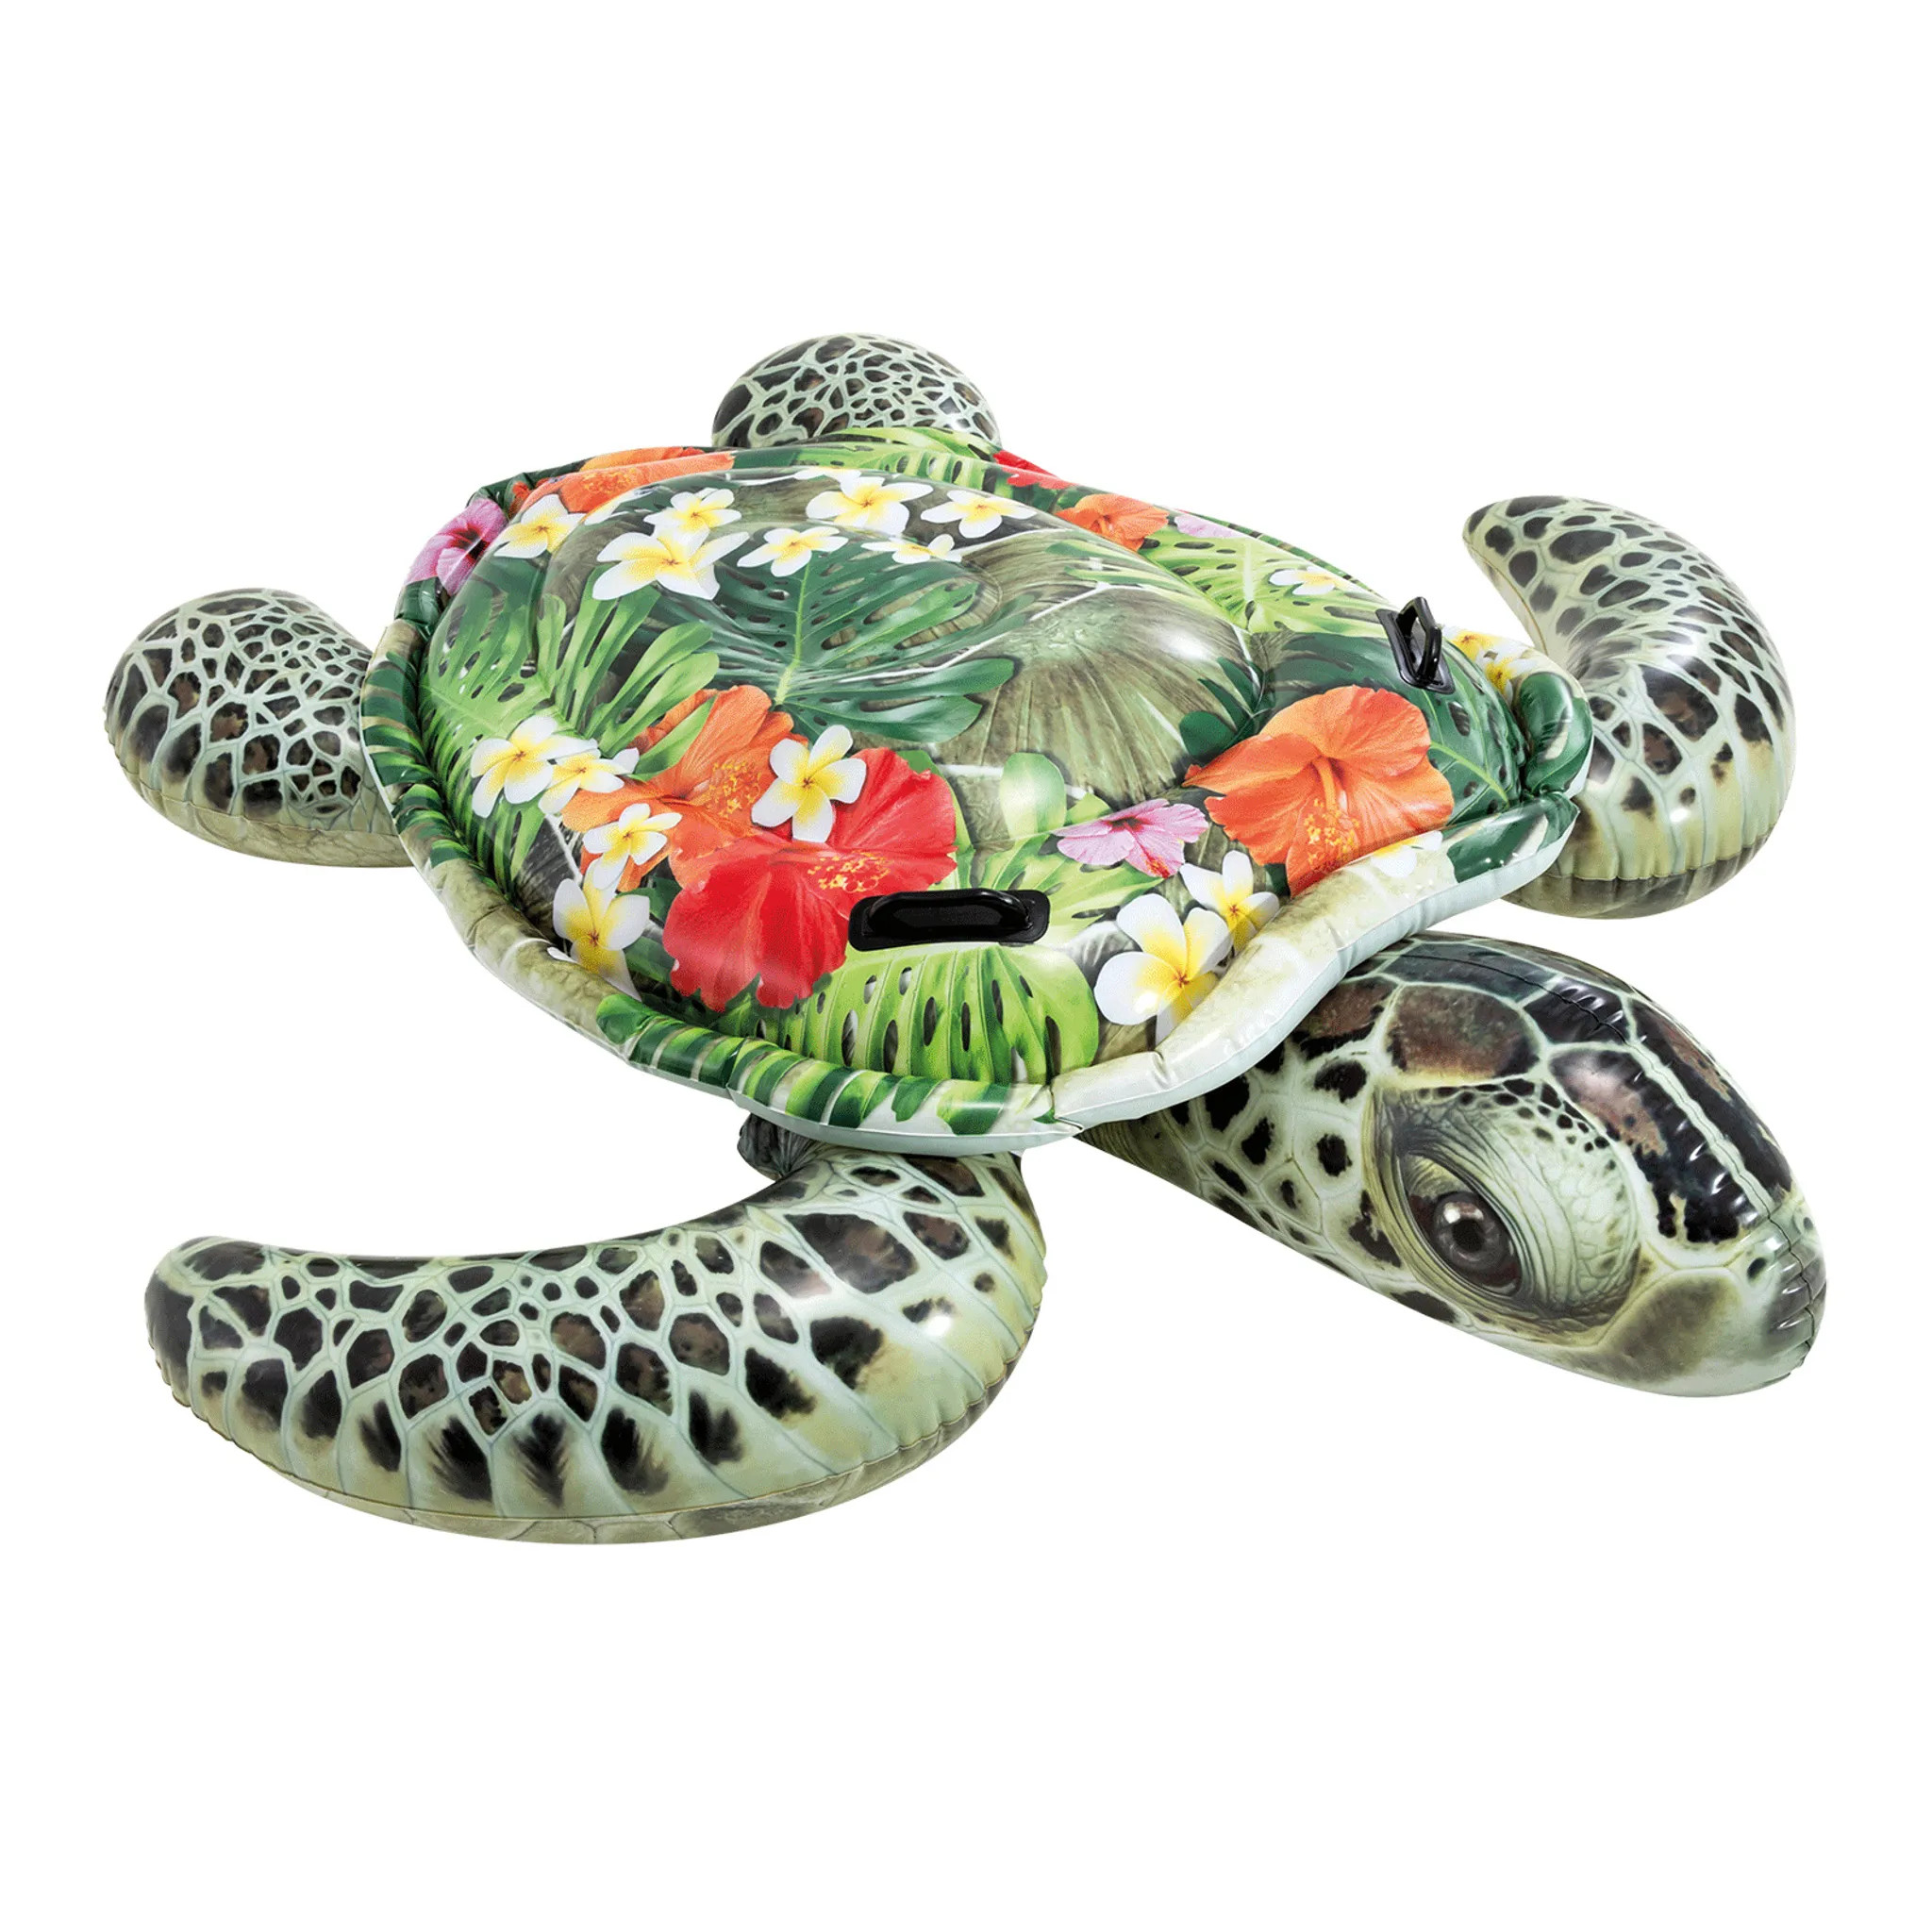 INTEX Wasserspielzeug, 57555NP (191x170cm) Meeresschildkröte mehrfarbig